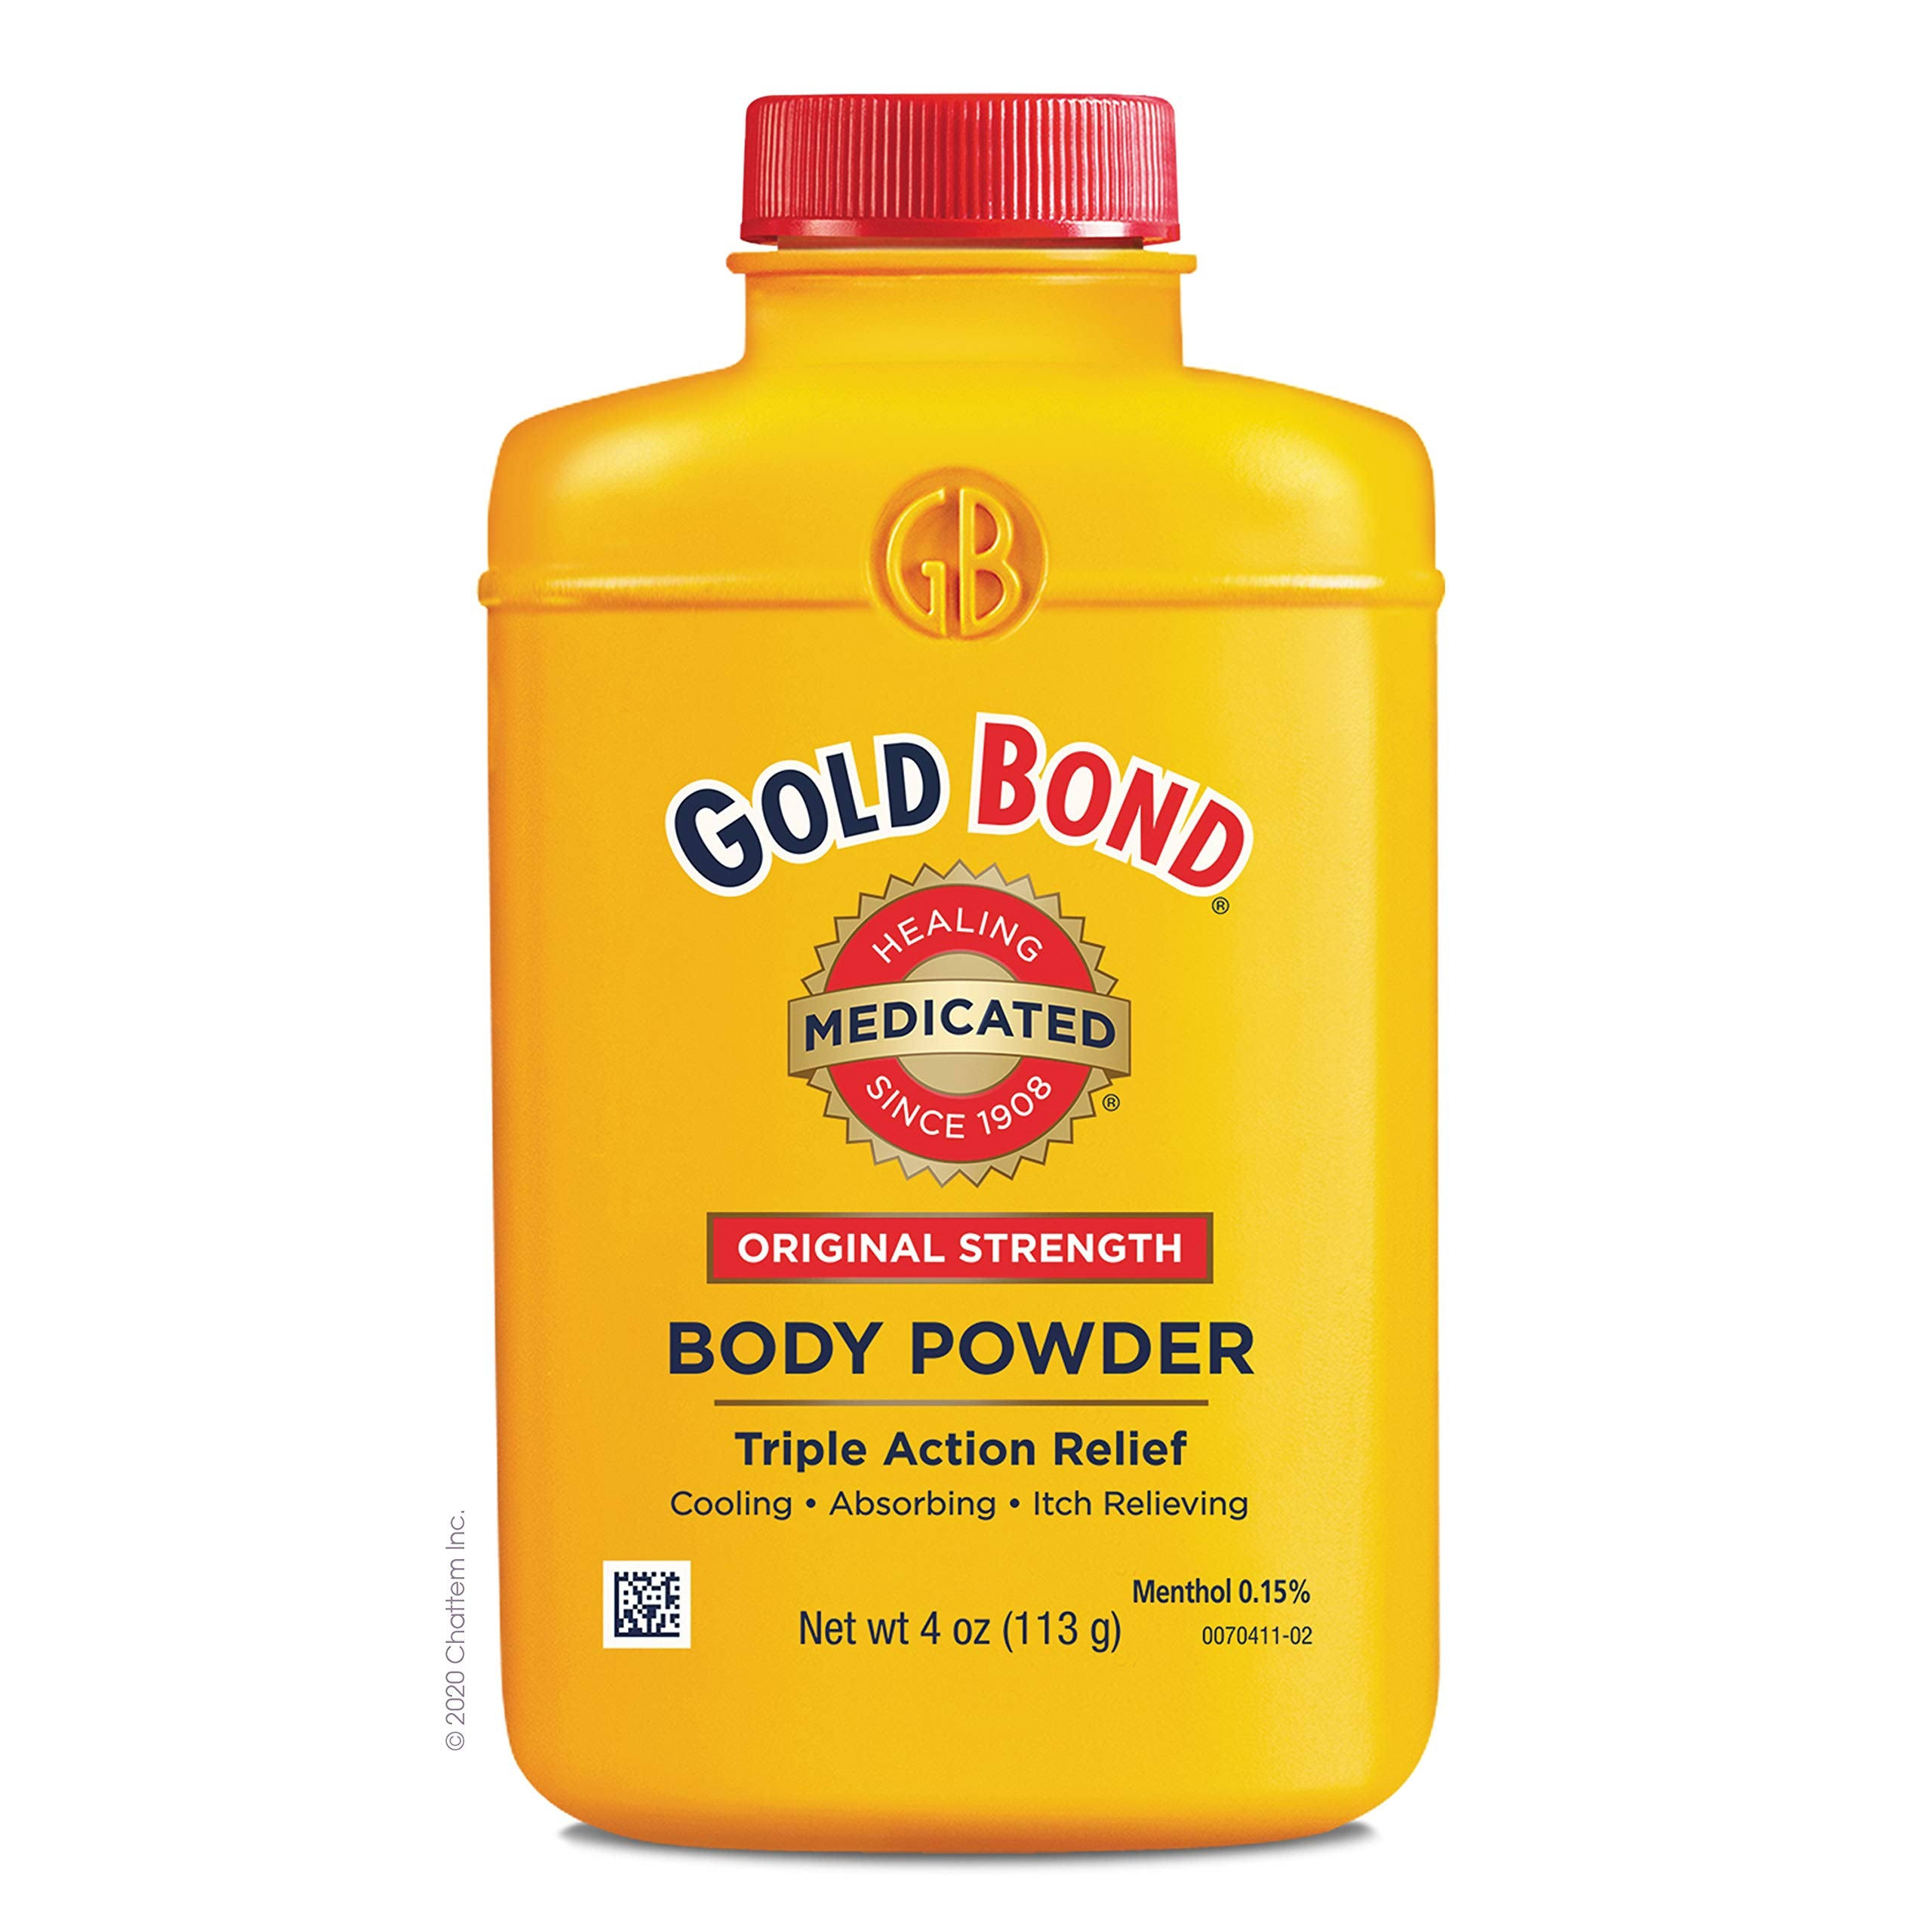 Gold Bond Body Powder, Original Strength, Medicated - 4 oz